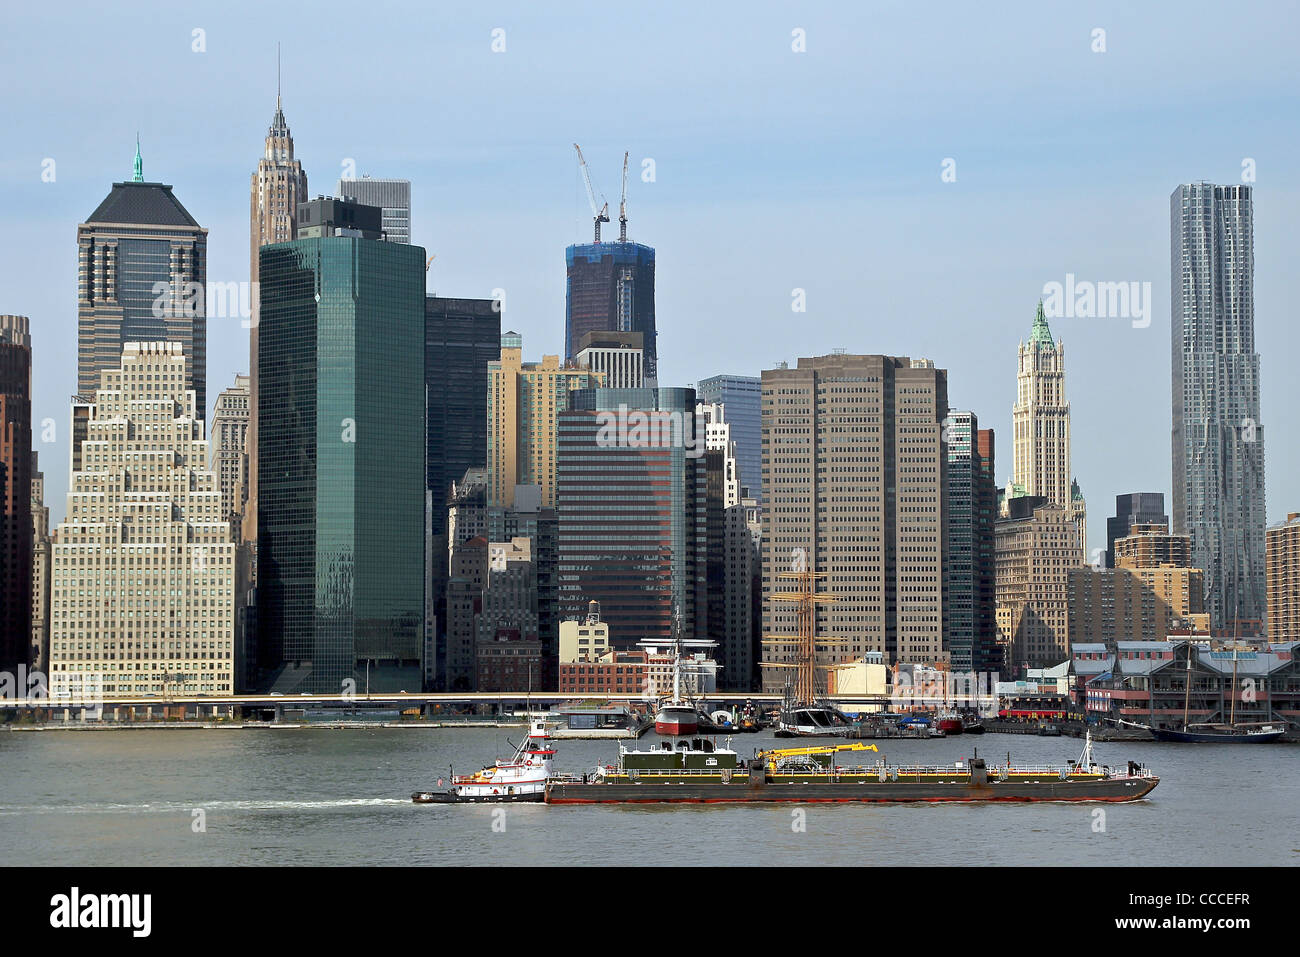 Vue de Manhattan et d'une barge dans l'East River. New York City, New York, United States Banque D'Images